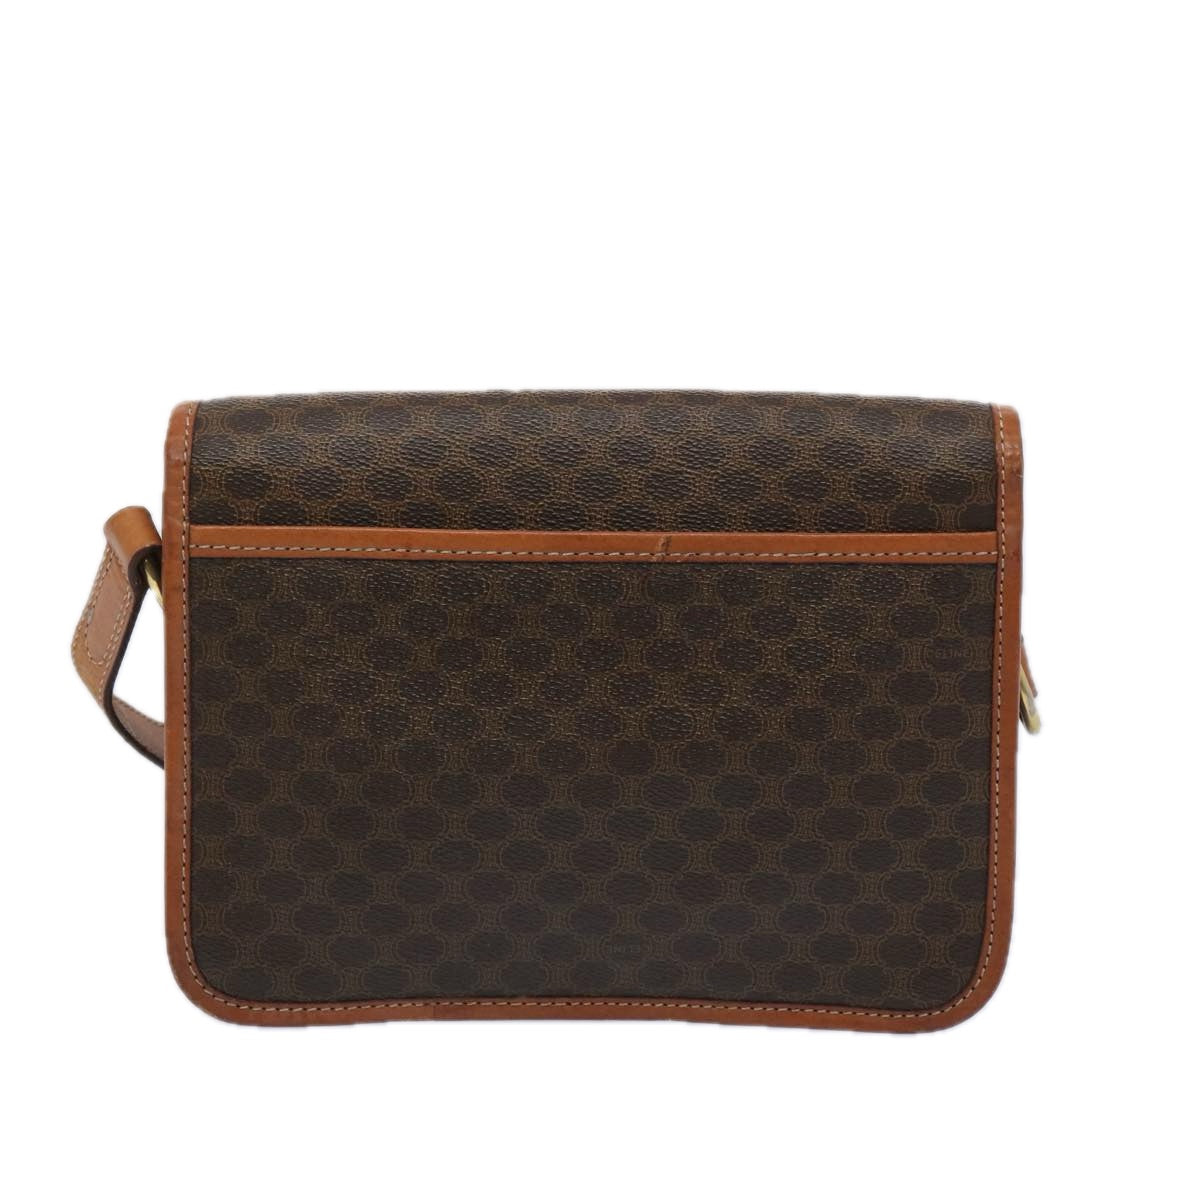 CELINE Macadam Canvas Shoulder Bag PVC Leather Brown Auth 65289